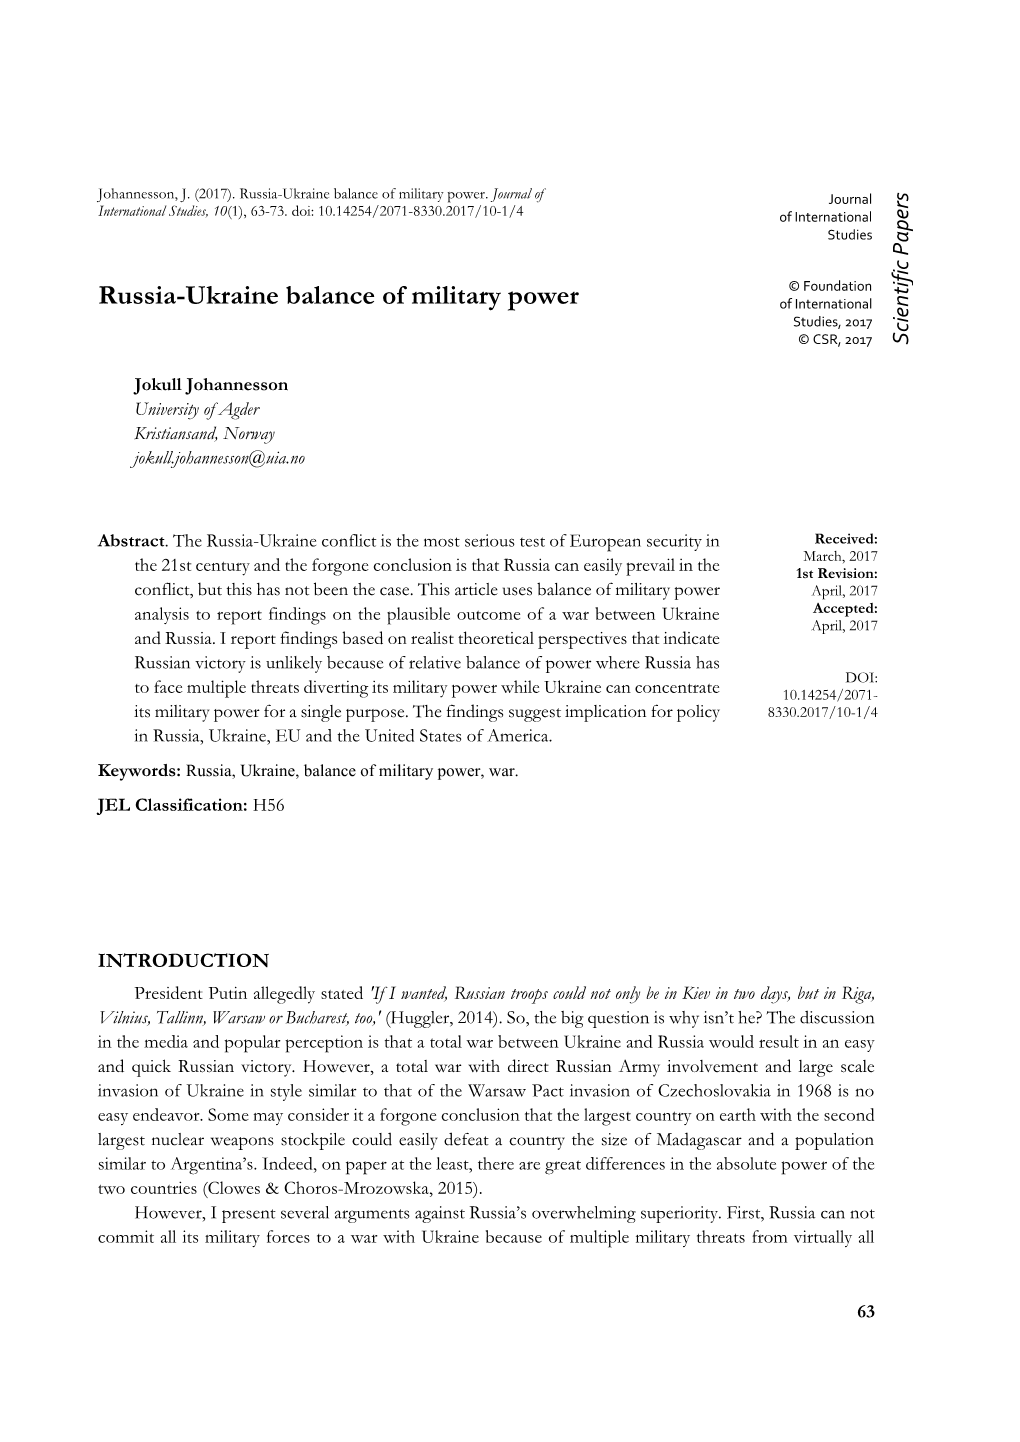 Russia-Ukraine Balance of Military Power